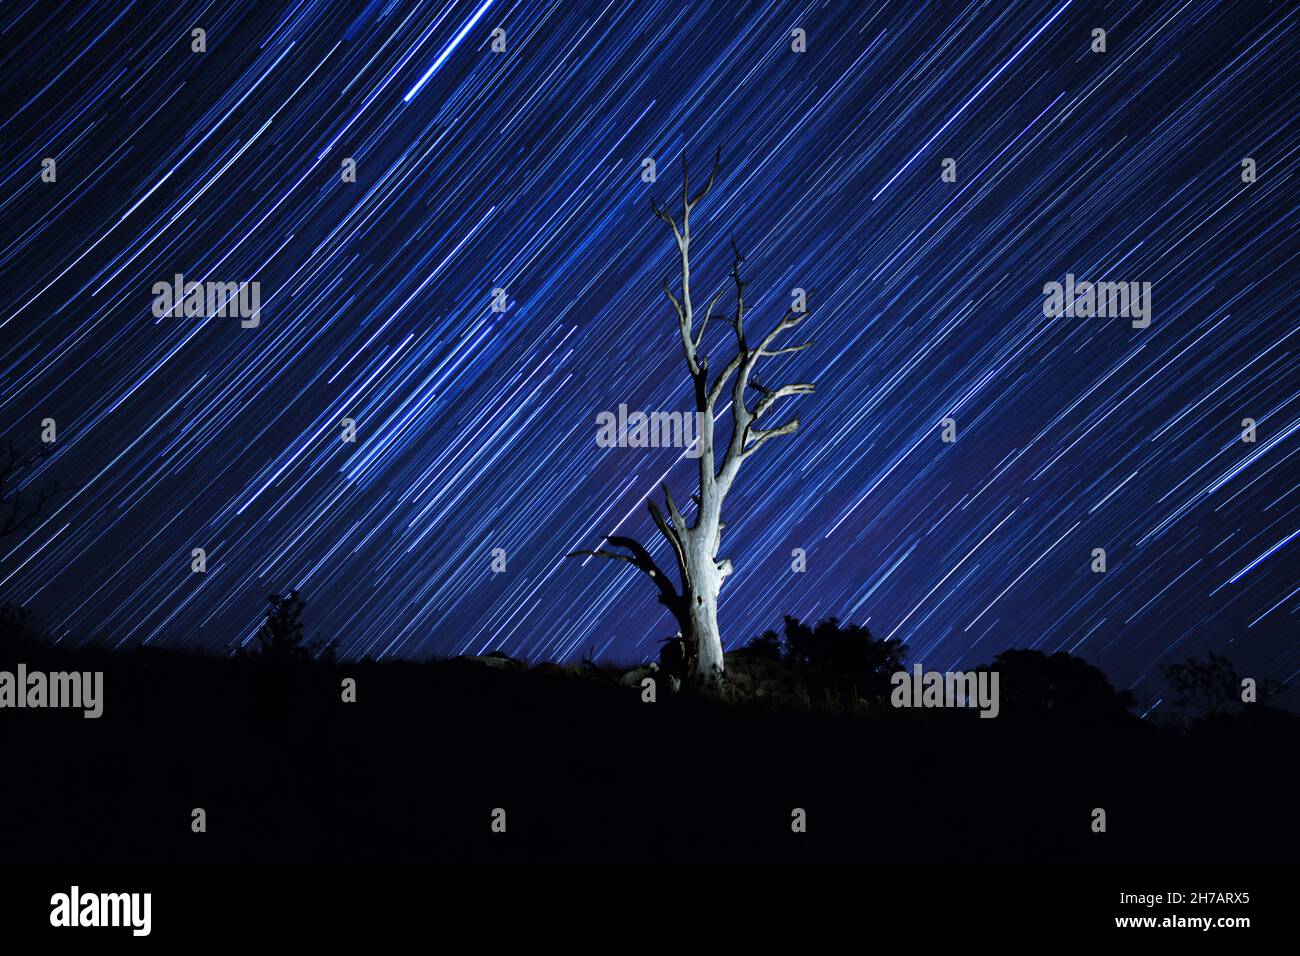 Sentier étoilé sur l'arbre illuminé mort Banque D'Images